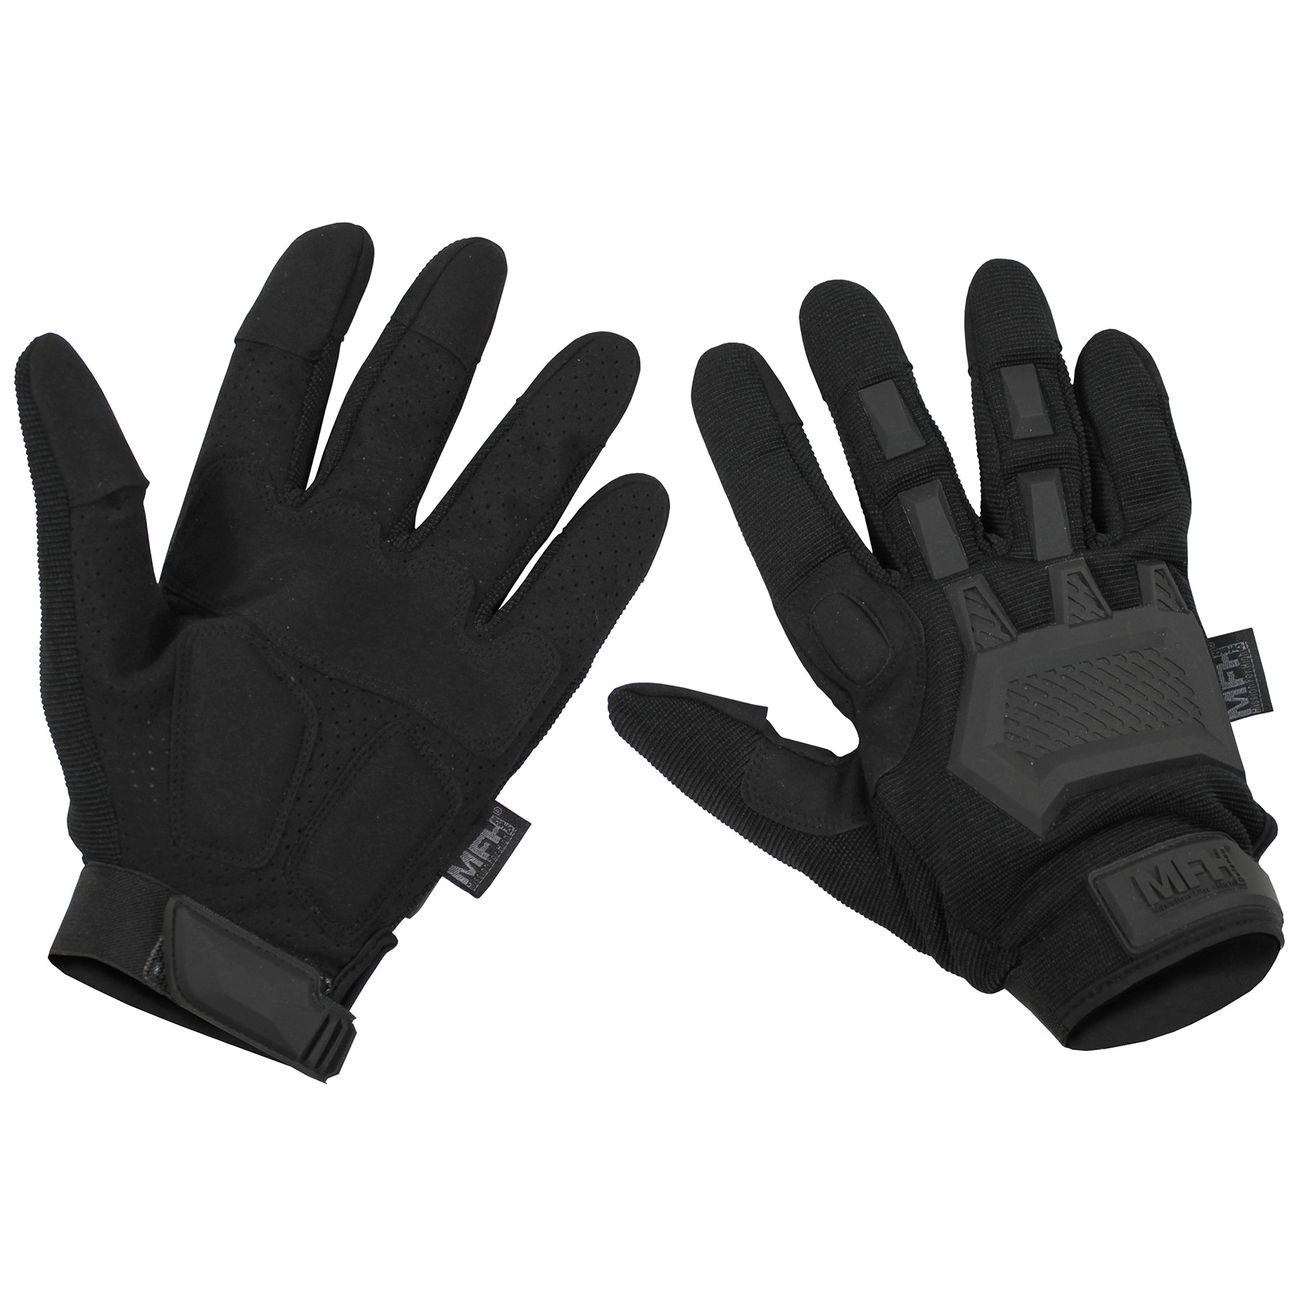 MFH Handschuhe PROTECT Leder Security Schutzhandschuhe schnitthemmend NEU 